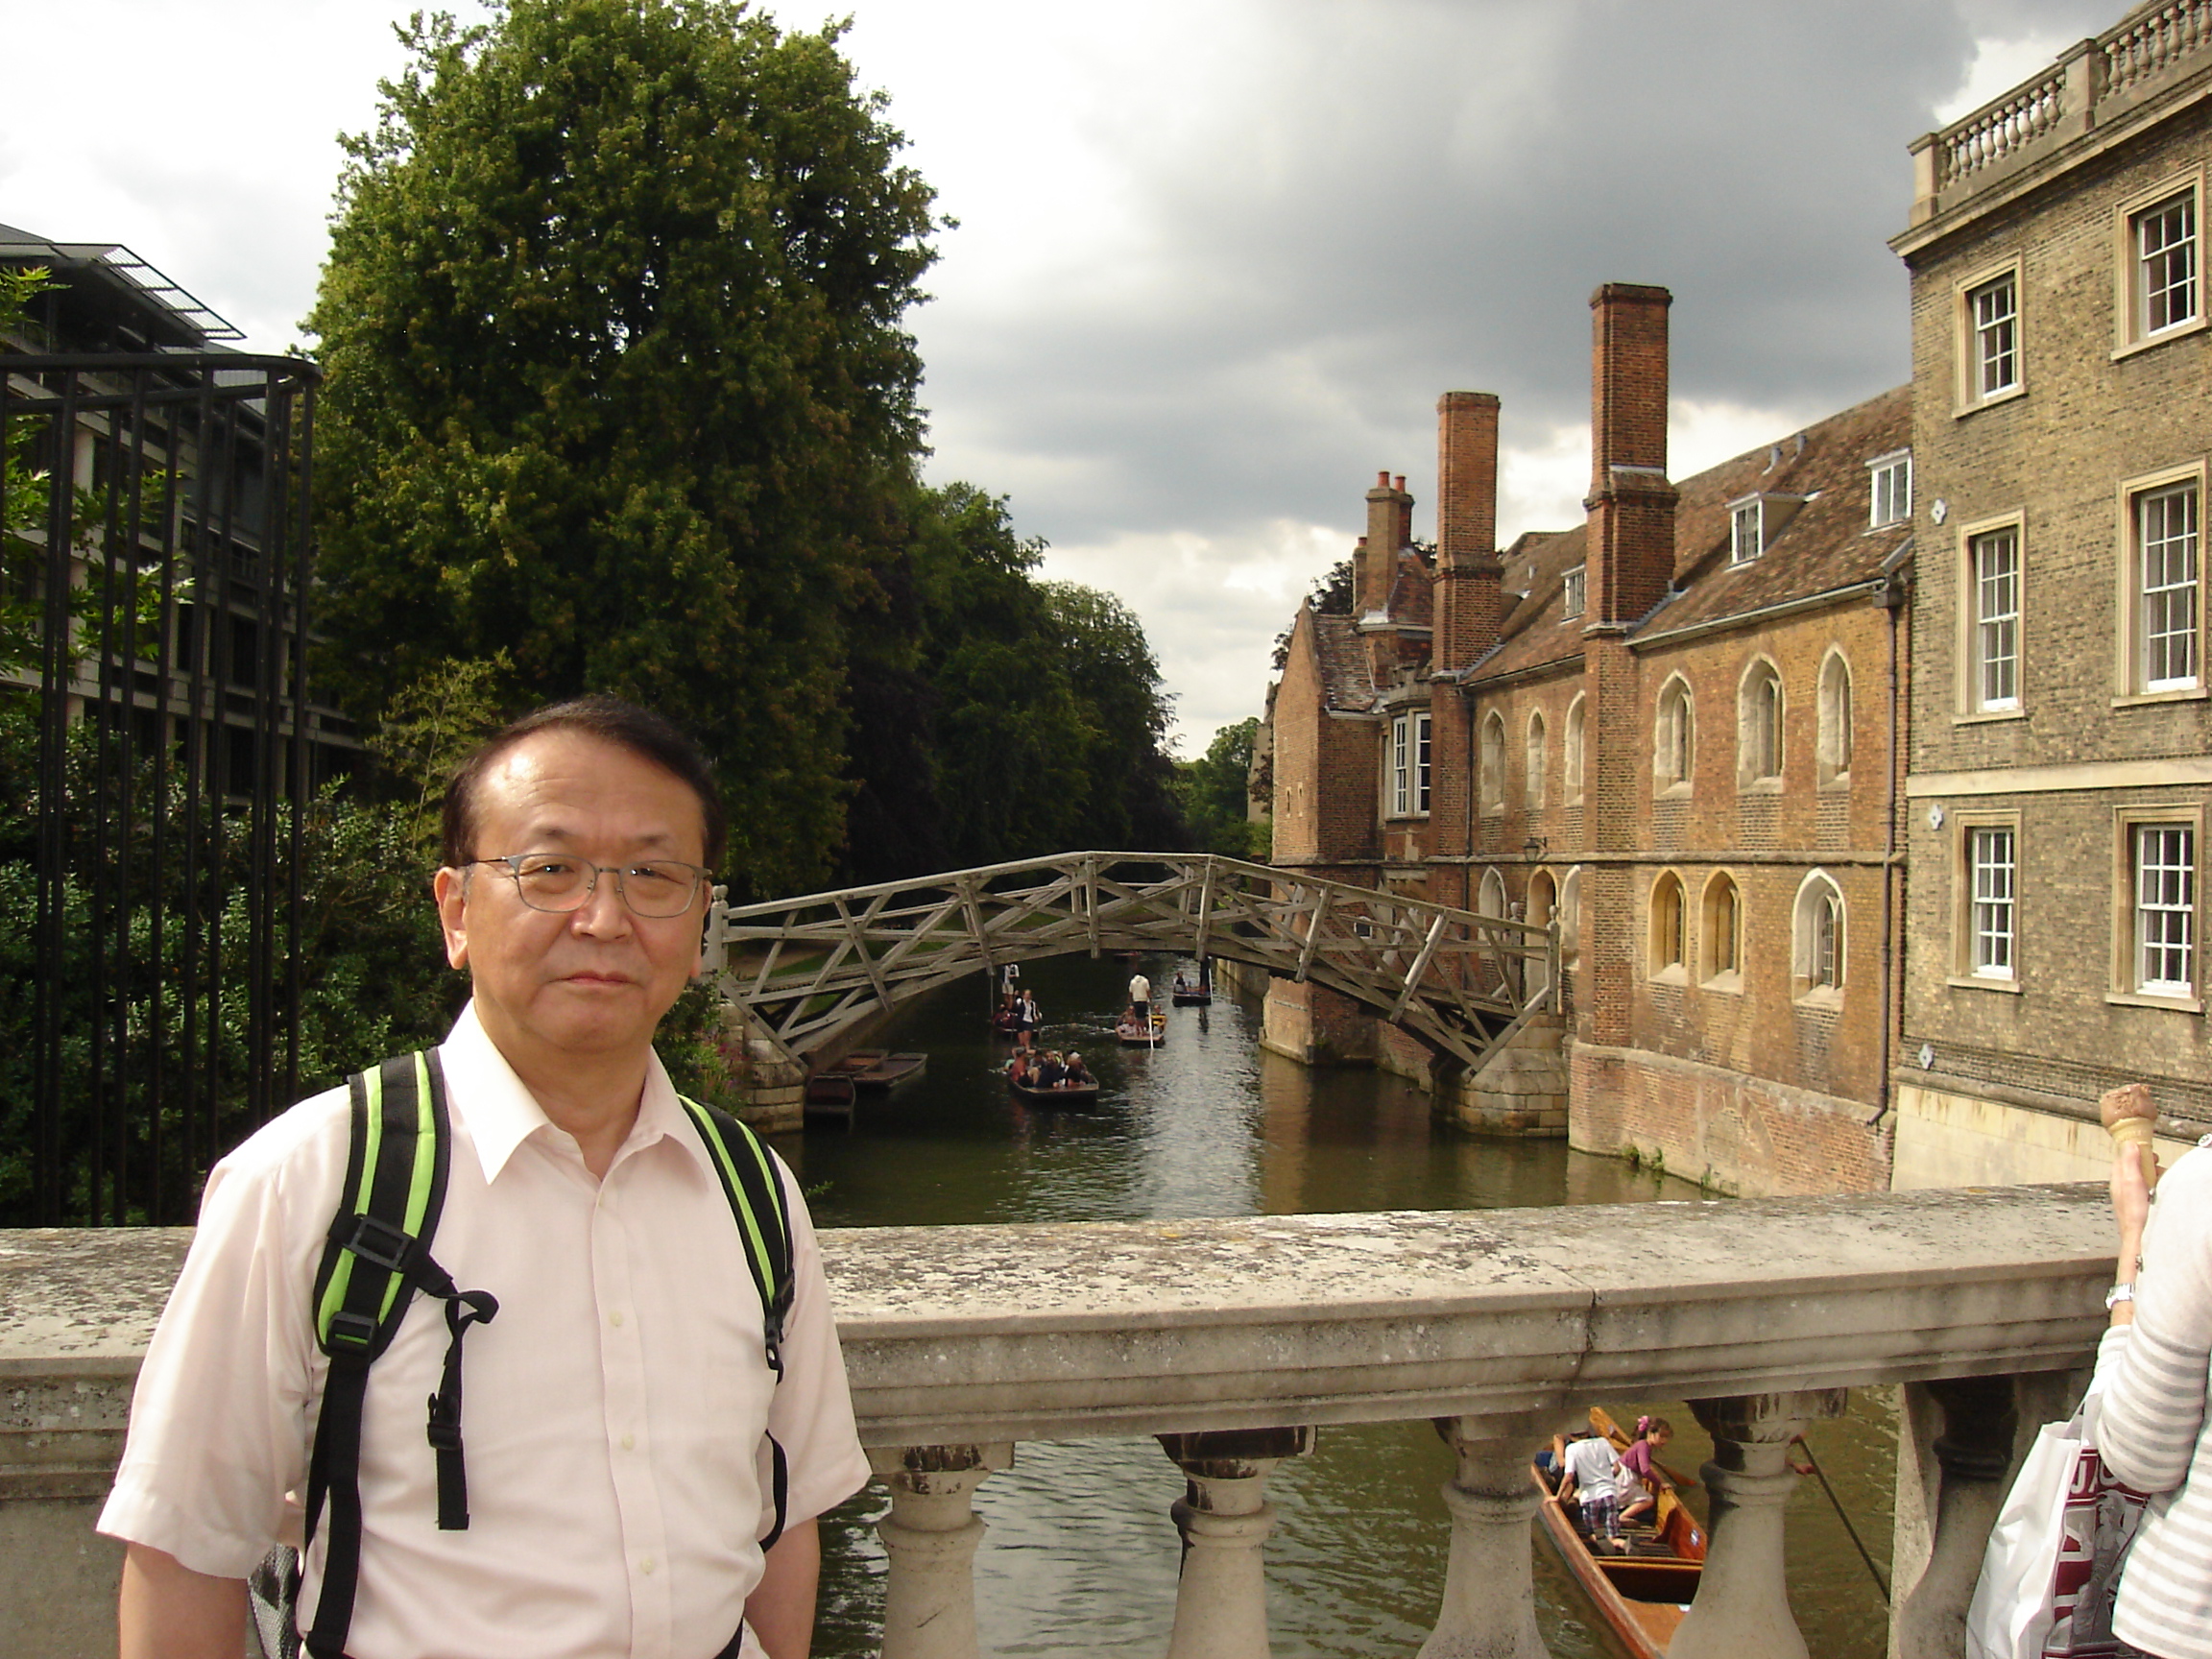 「数学の橋」ニュートンが設計したとか (Cambridge, UK)

